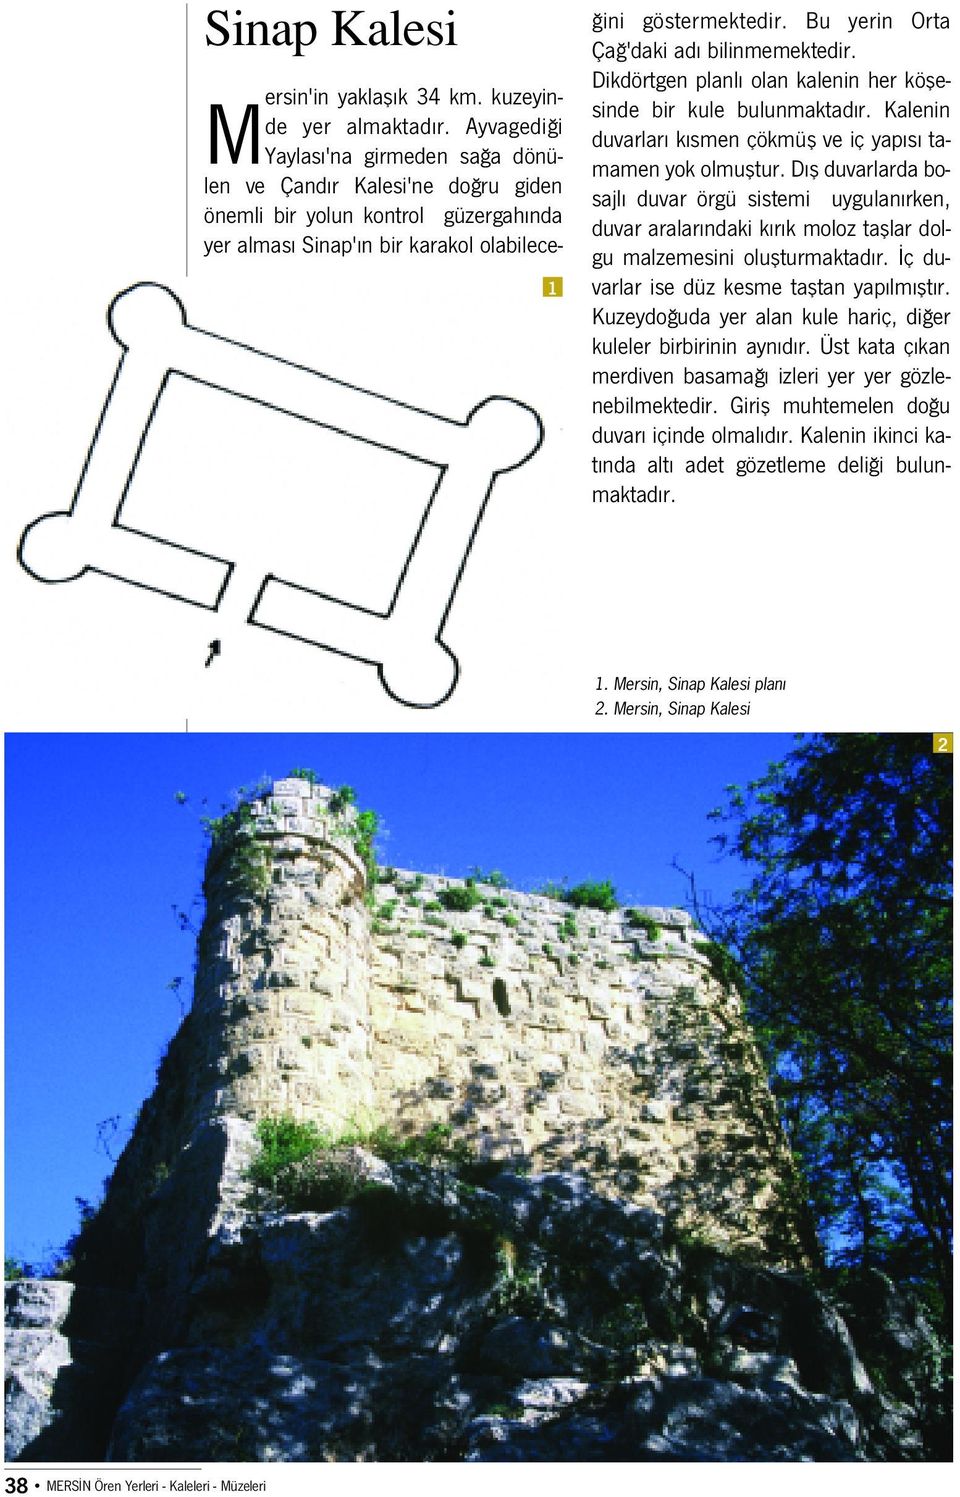 Bu yerin Orta Ça 'daki ad bilinmemektedir. Dikdörtgen planl olan kalenin her köflesinde bir kule bulunmaktad r. Kalenin duvarlar k smen çökmüfl ve iç yap s tamamen yok olmufltur.